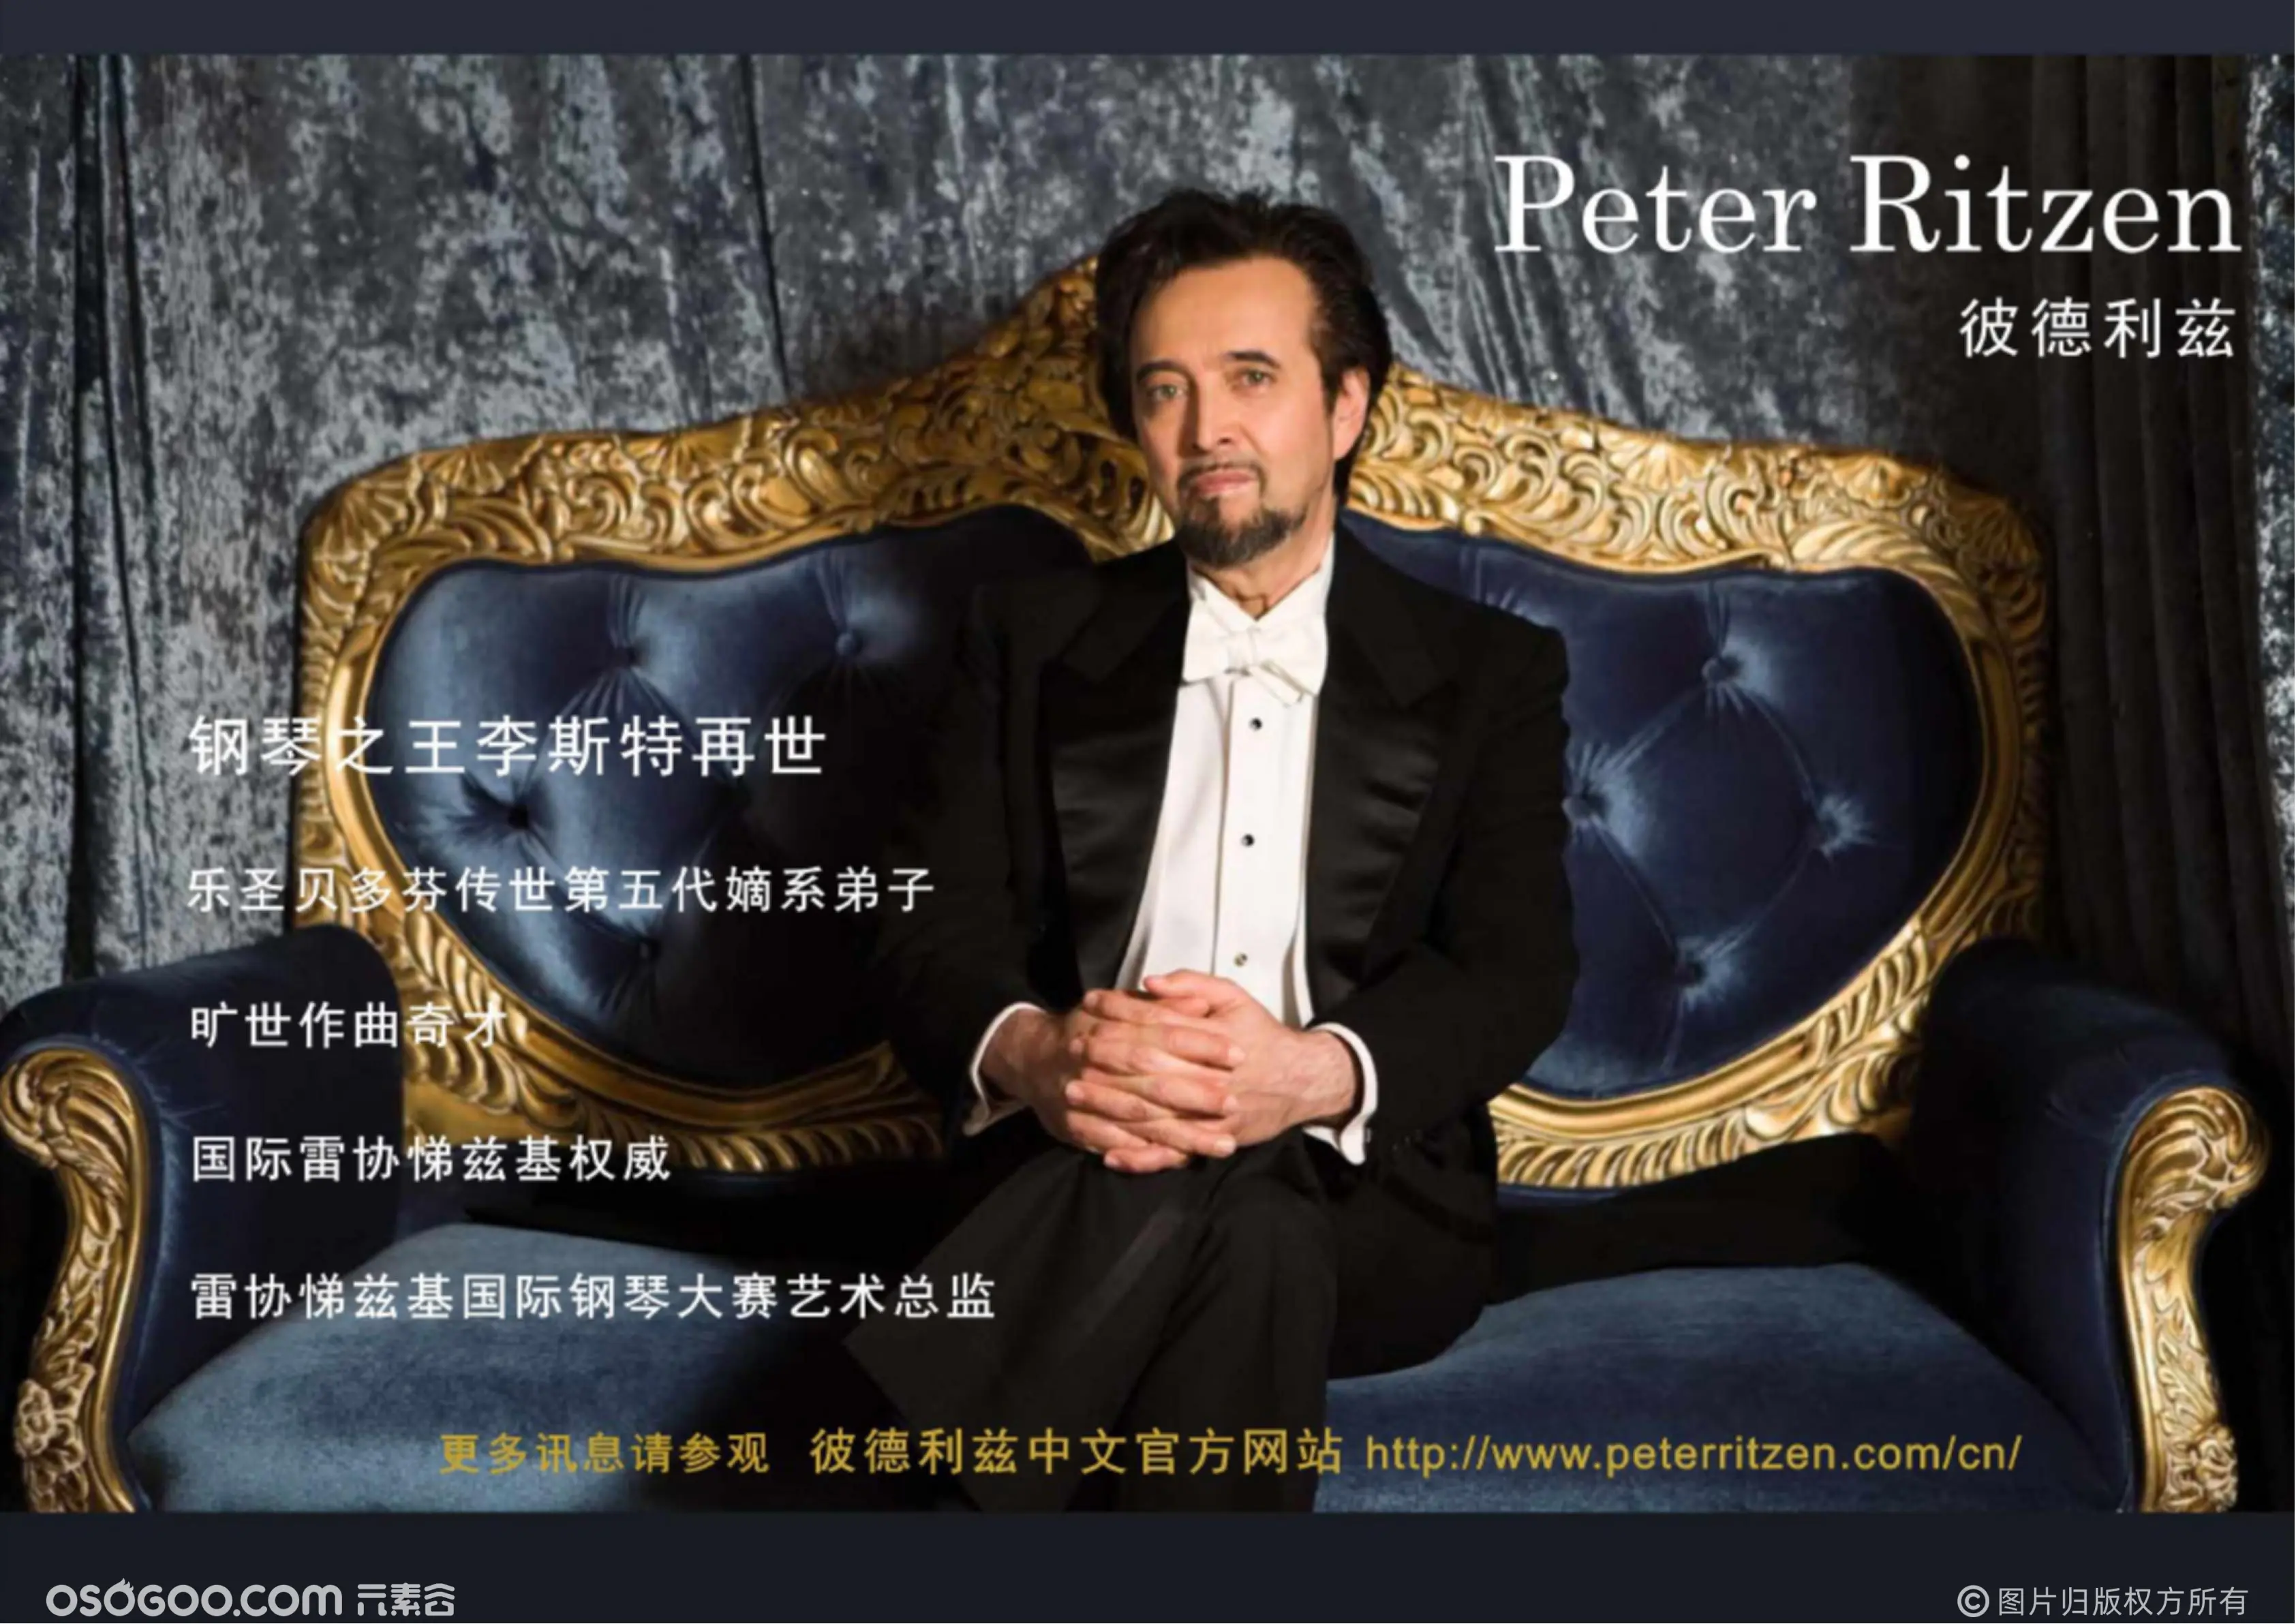 贝多芬第五代弟子彼德利兹中国音乐会巡回